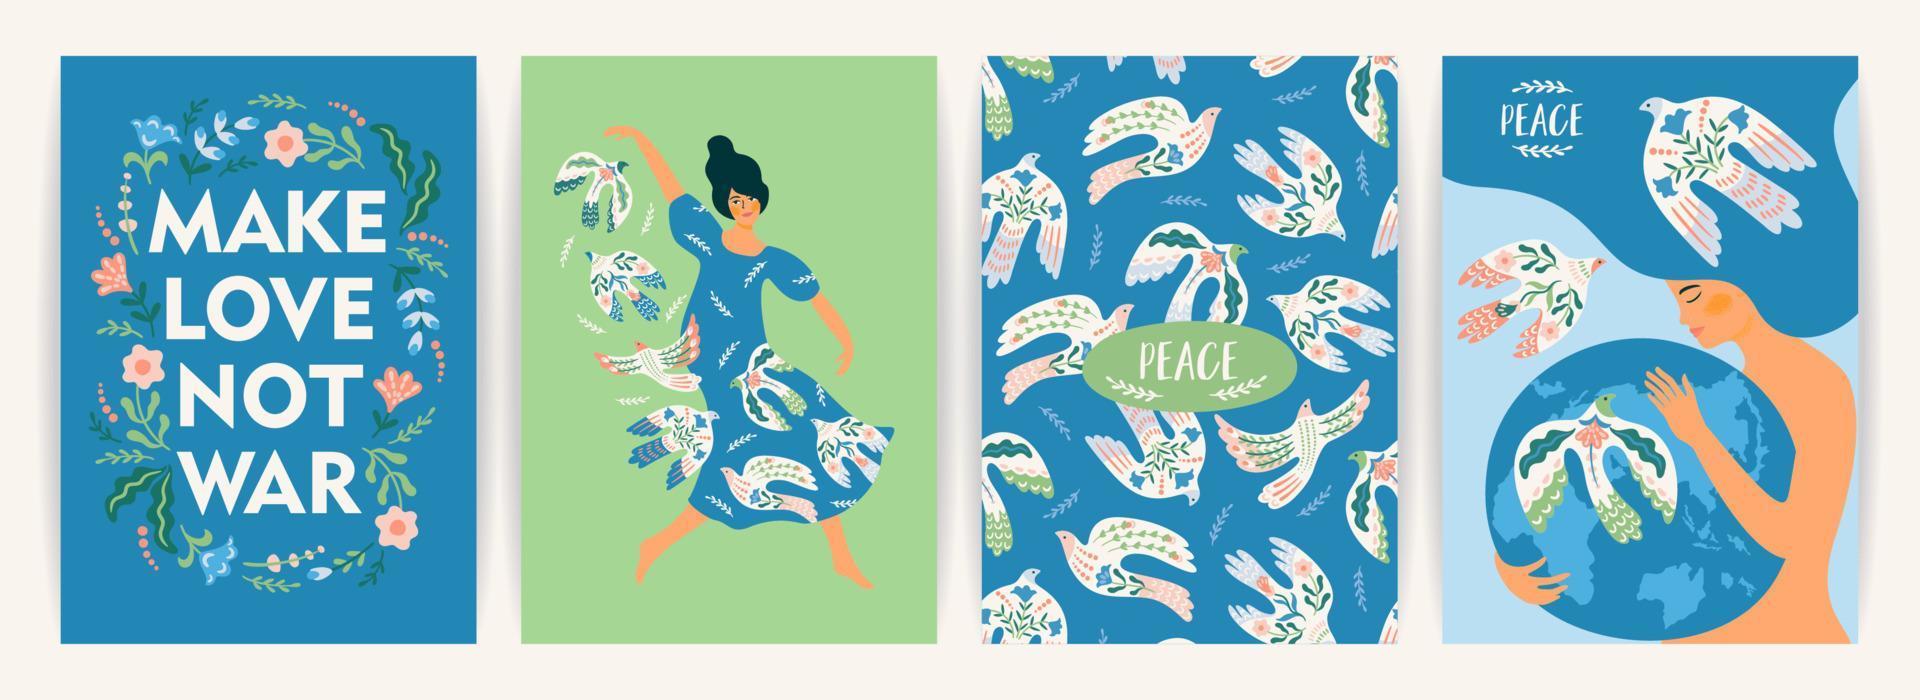 pace sulla Terra. donna e colomba della pace. insieme vettoriale. illustrazione per carta, poster, volantino e altro vettore